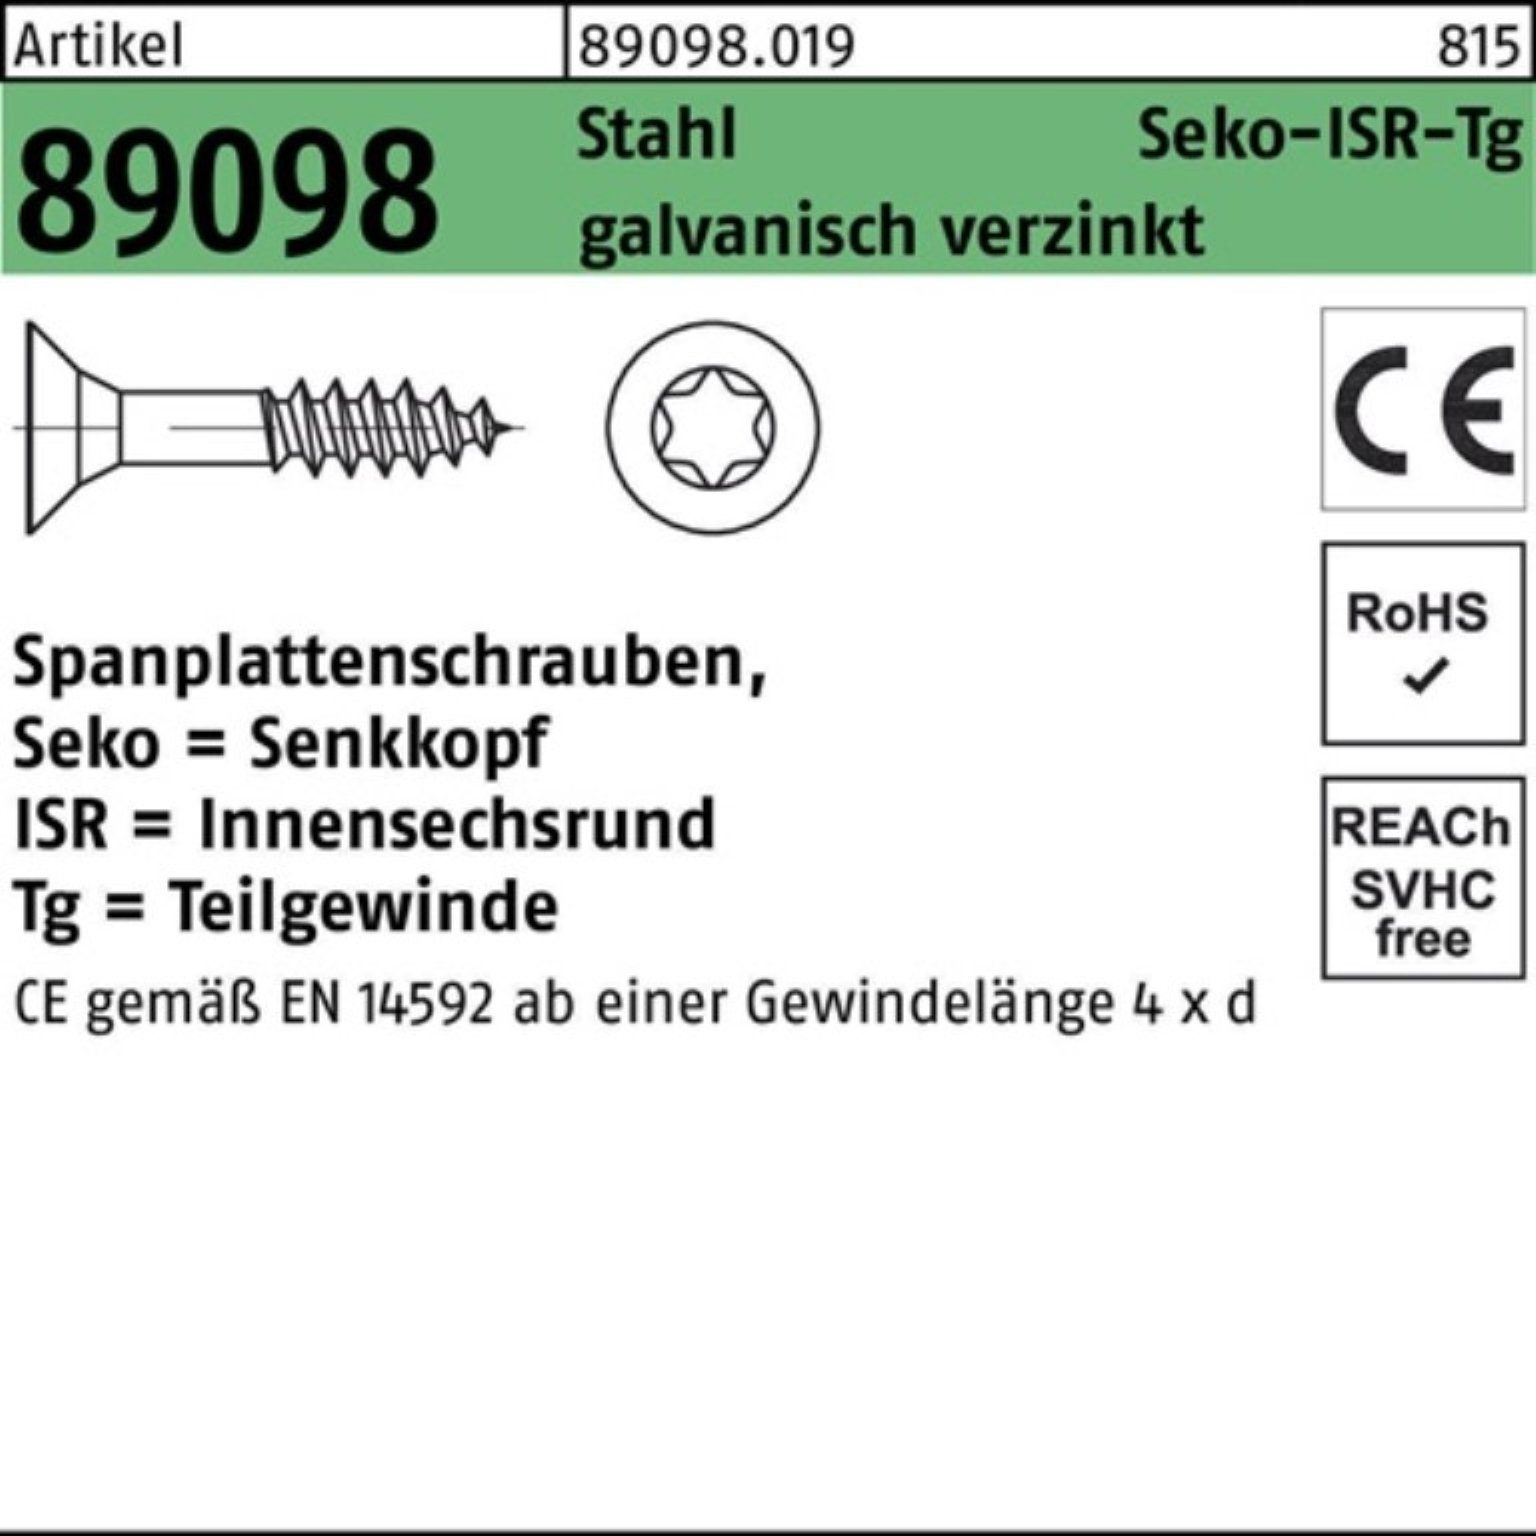 Reyher Spanplattenschraube Pack 89098 1000er Spanplattenschraube 3,5x45/27-T15 Stah R SEKO TG ISR